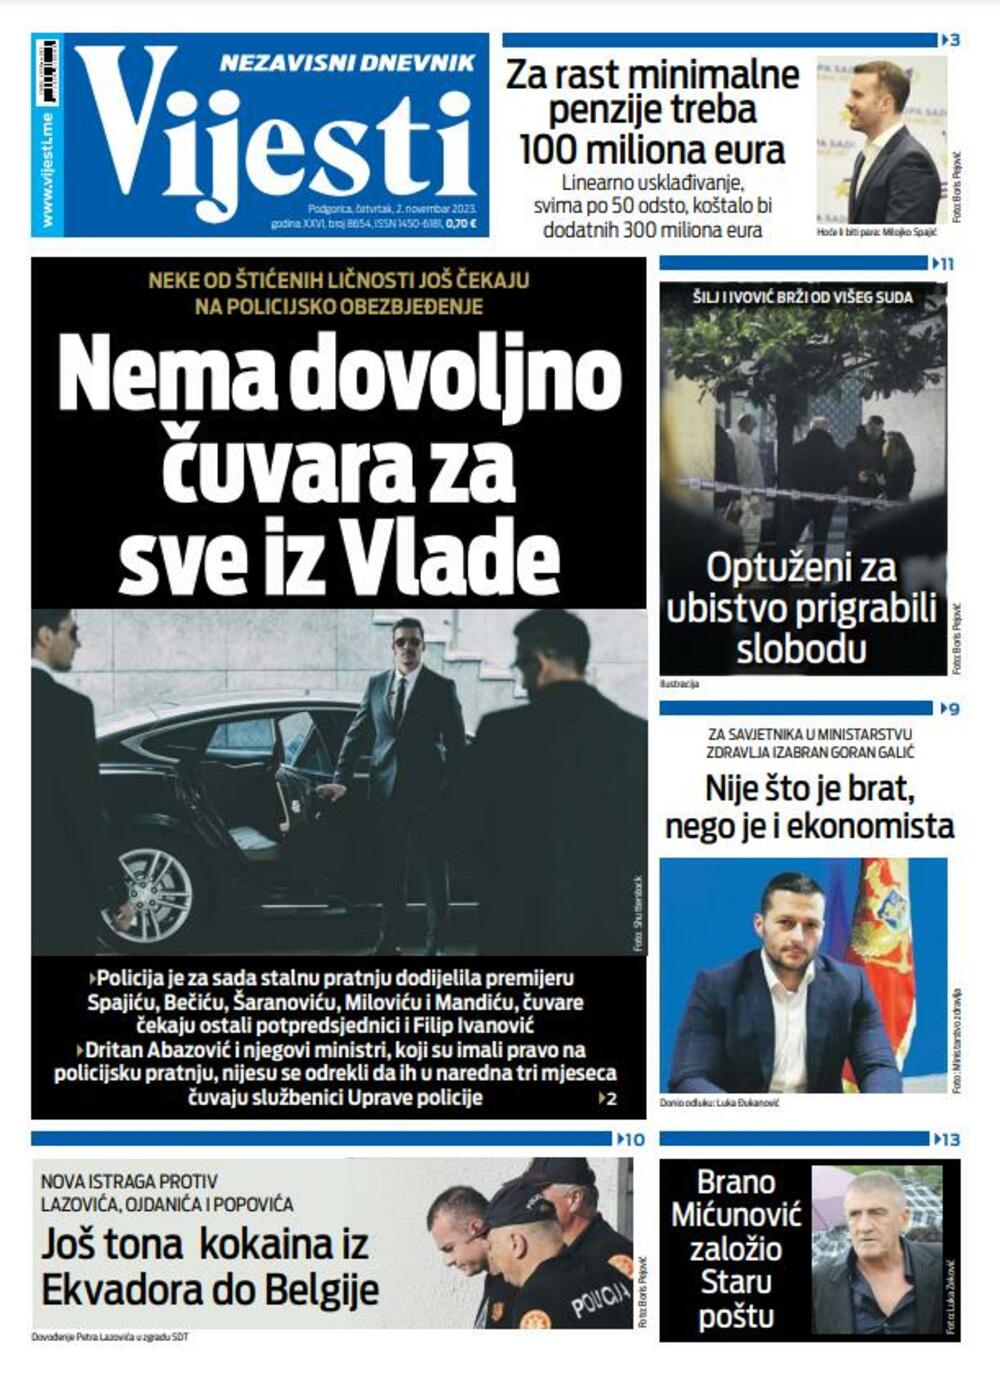 Naslovna strana "Vijesti" za 2. novembar 2023., Foto: Vijesti